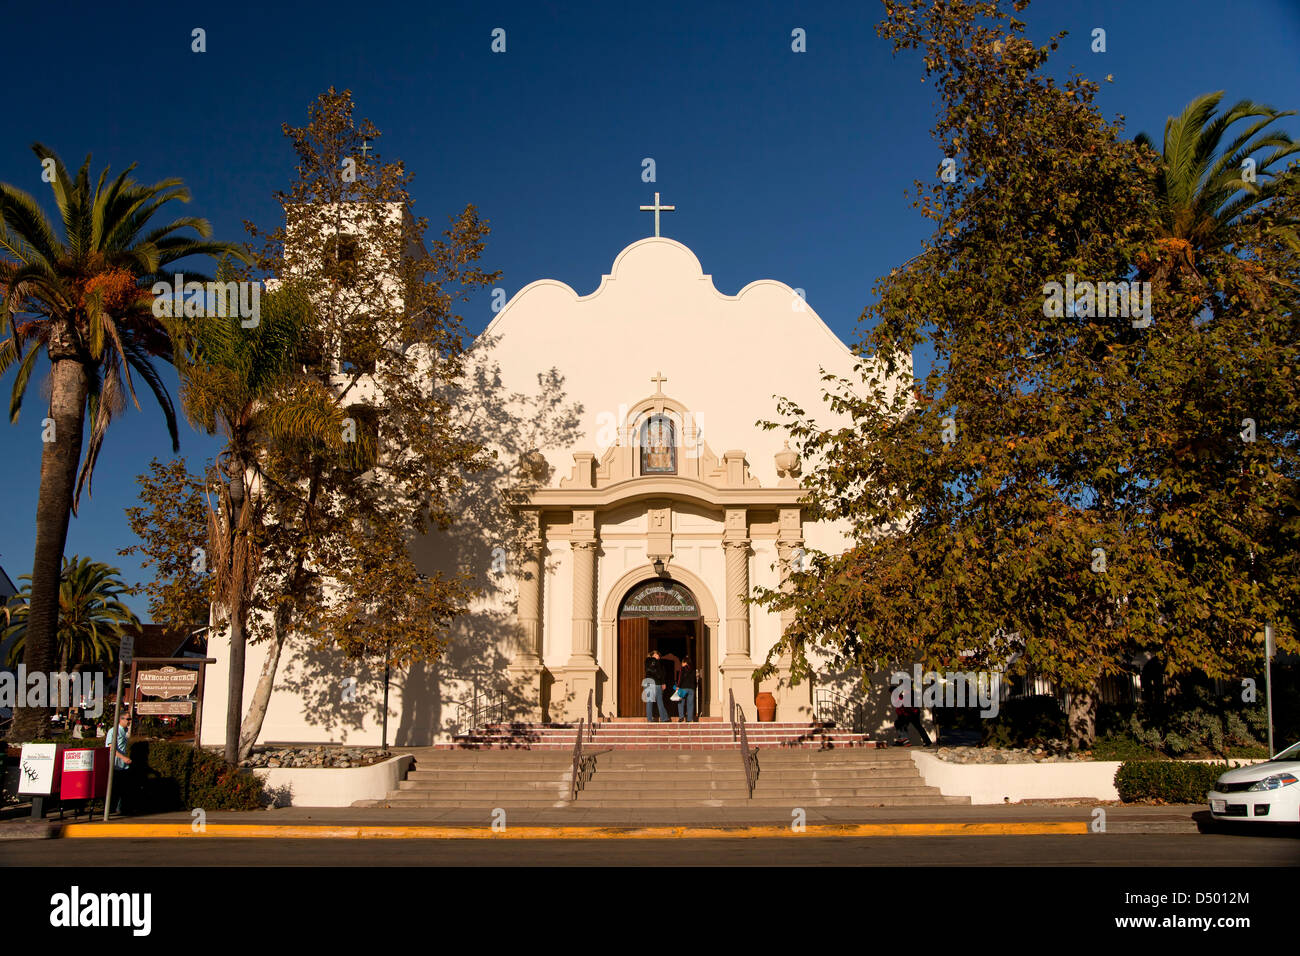 Katholische Kirche der Unbefleckten Empfängnis, Old Town State Park, San Diego, Kalifornien, Vereinigte Staaten von Amerika, USA Stockfoto